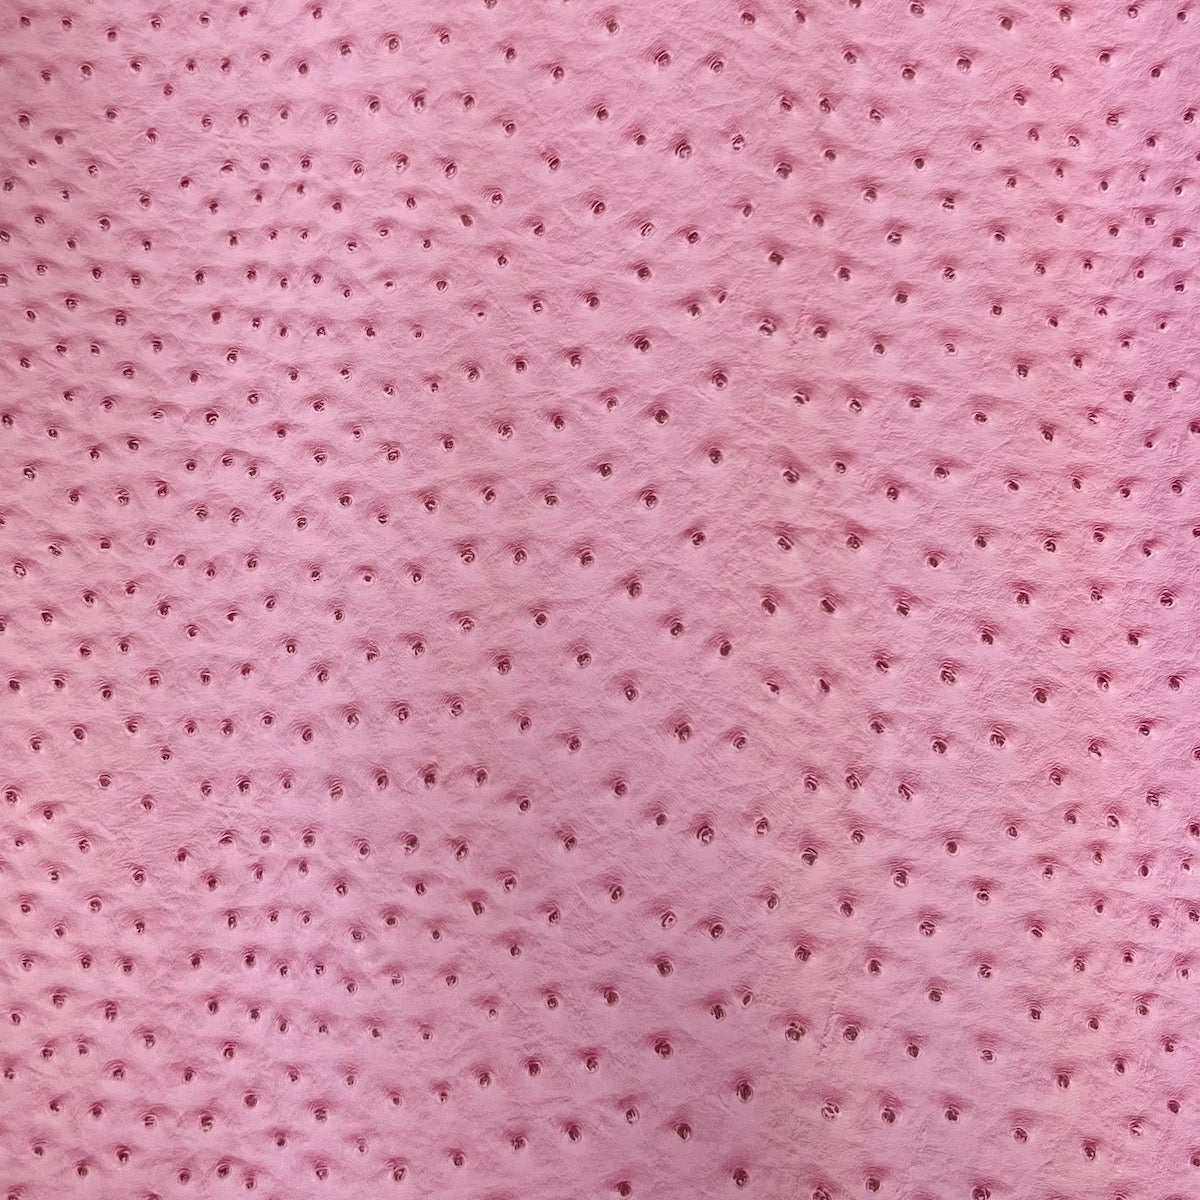 Bubble Gum Pink Leather Hides